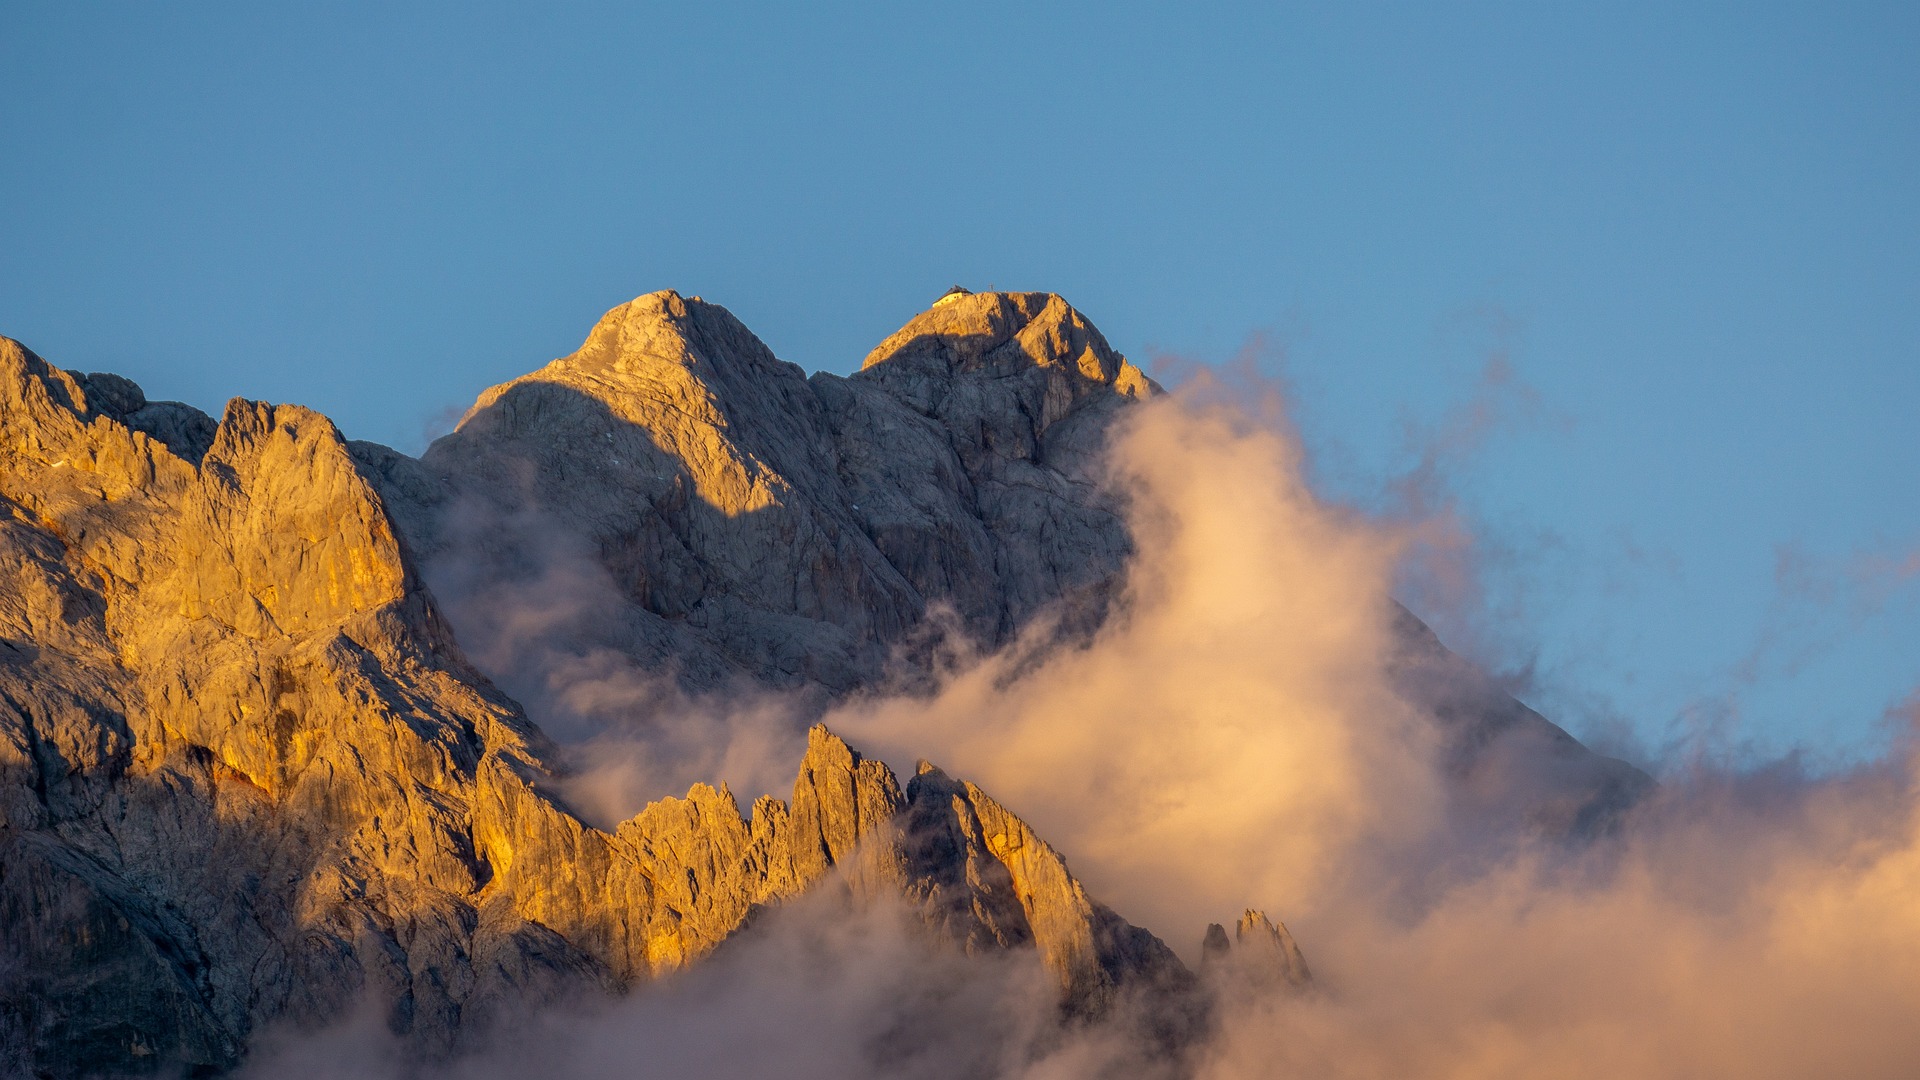 Berggipfelmomente am Hochkönig im Herbst erleben © pixabay